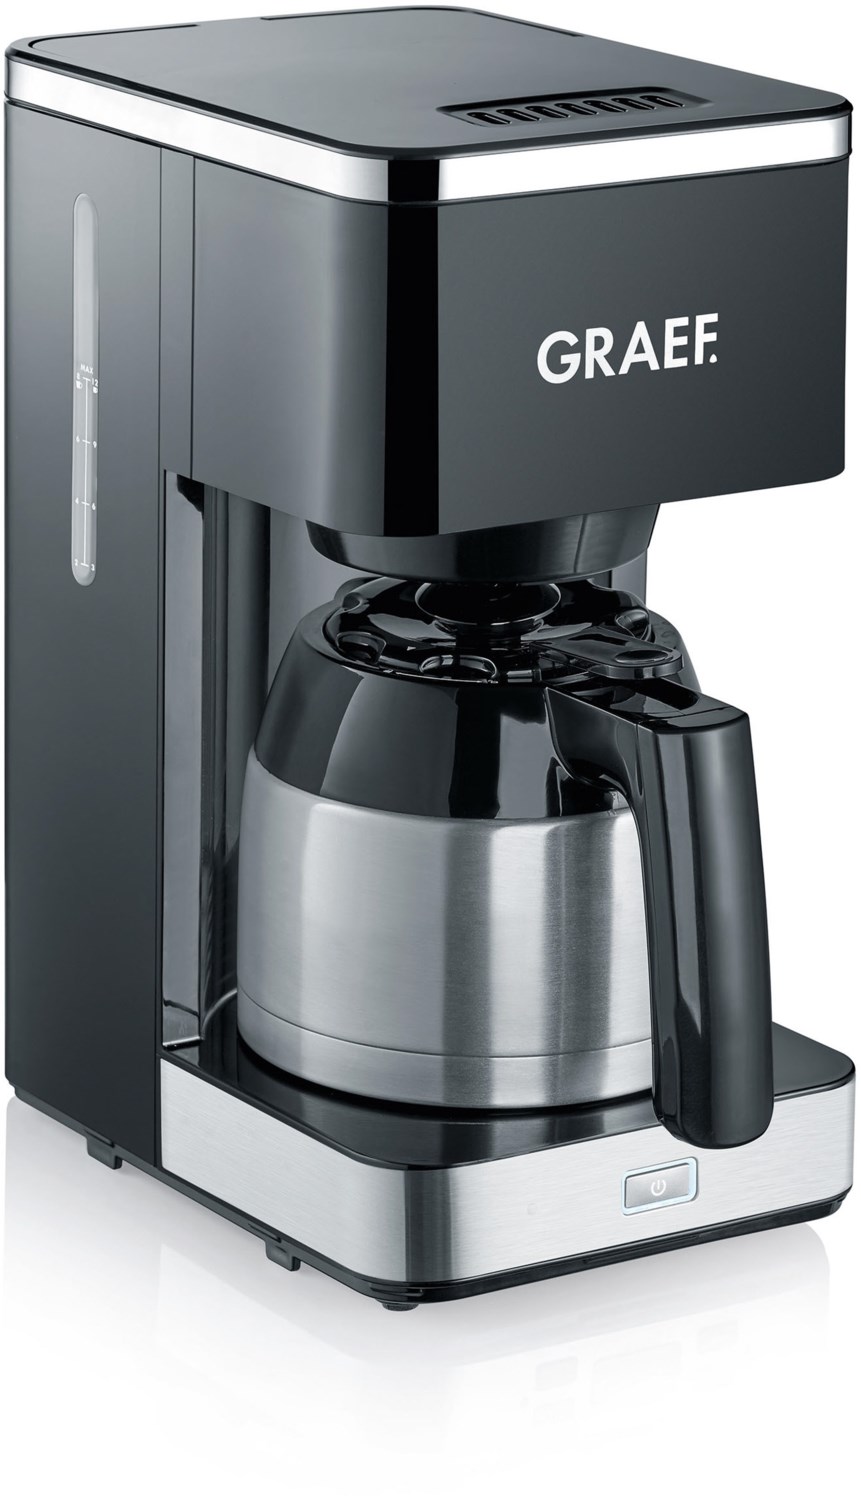 Graef Fk 412 - Filterkaffeemaschine - 1 L - 900 W - Schwarz - Edelstahl